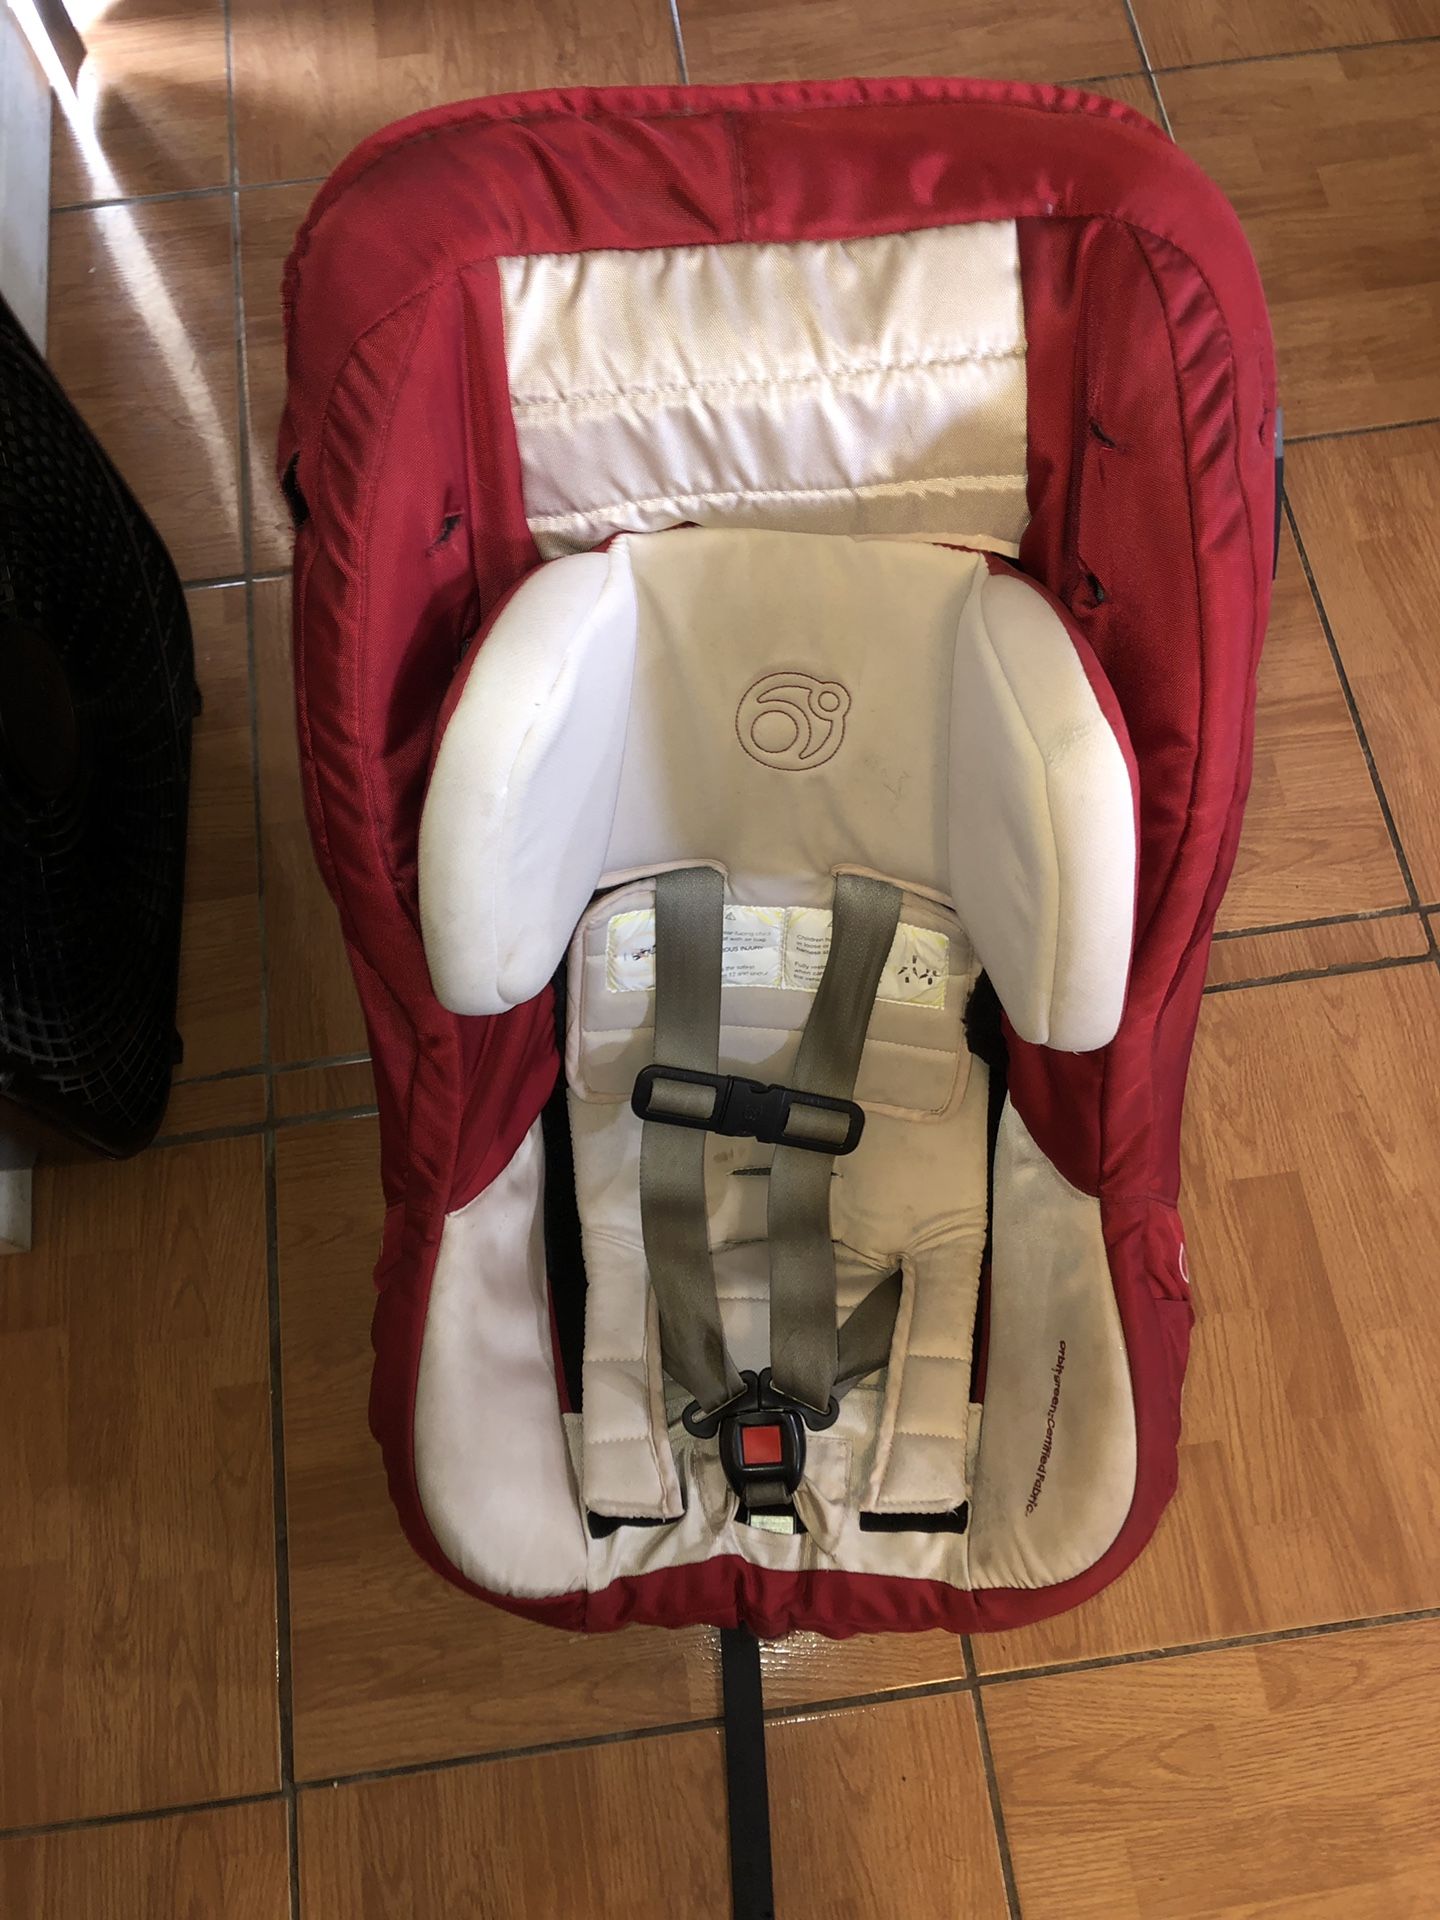 Orbit Toddler Car Seat